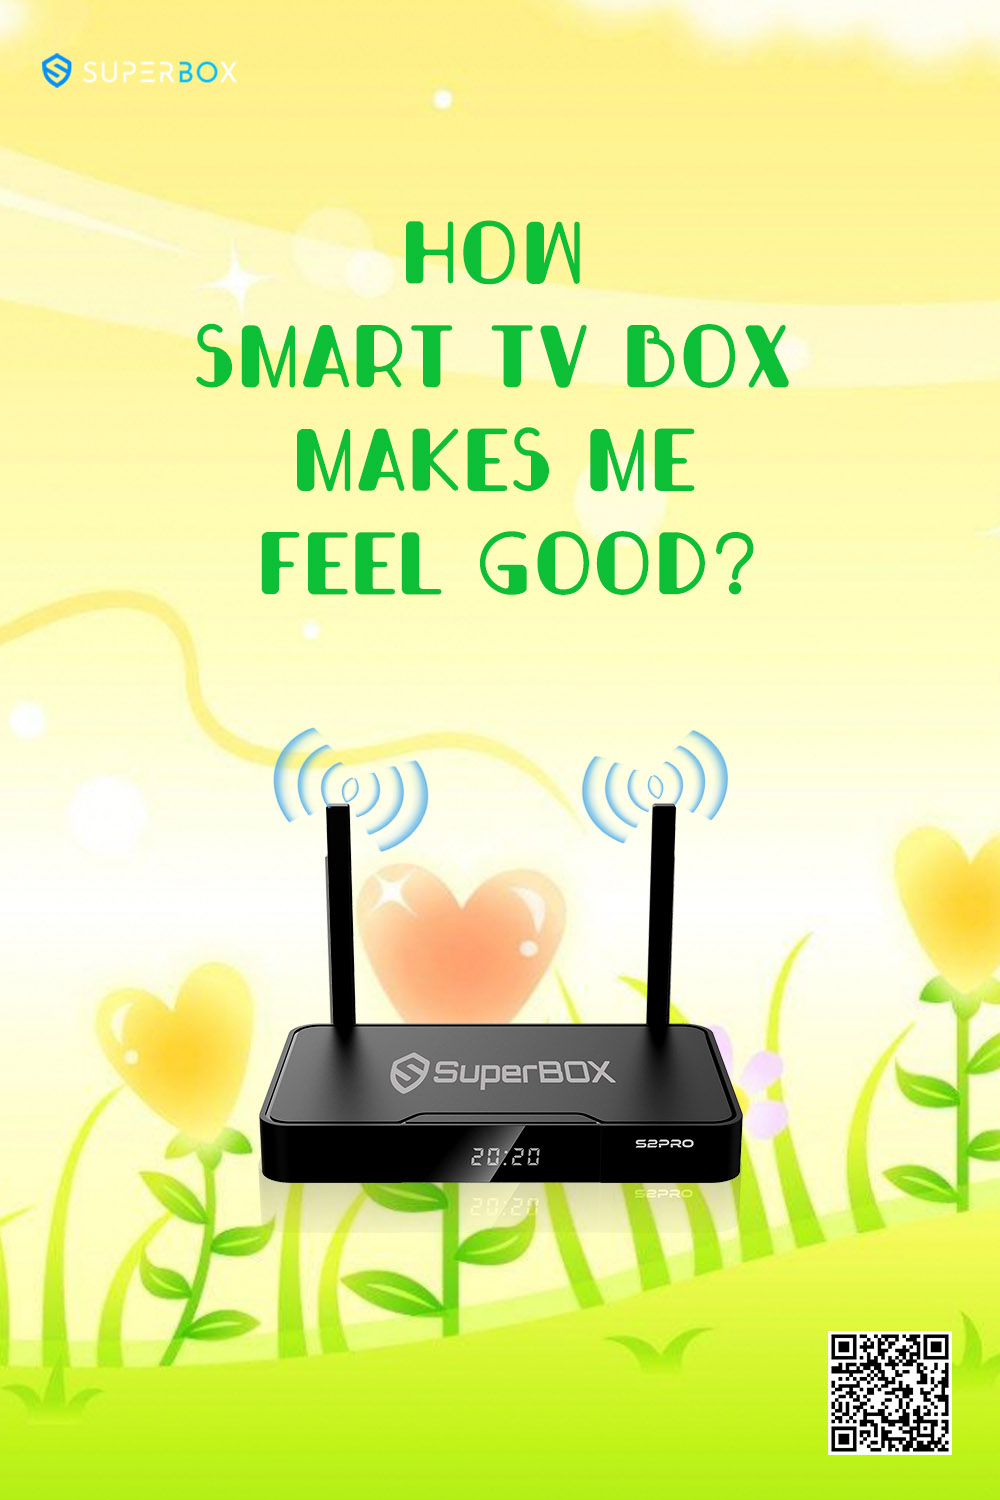 كيف تجعلني Smart TV Box أشعر أنني بحالة جيدة؟